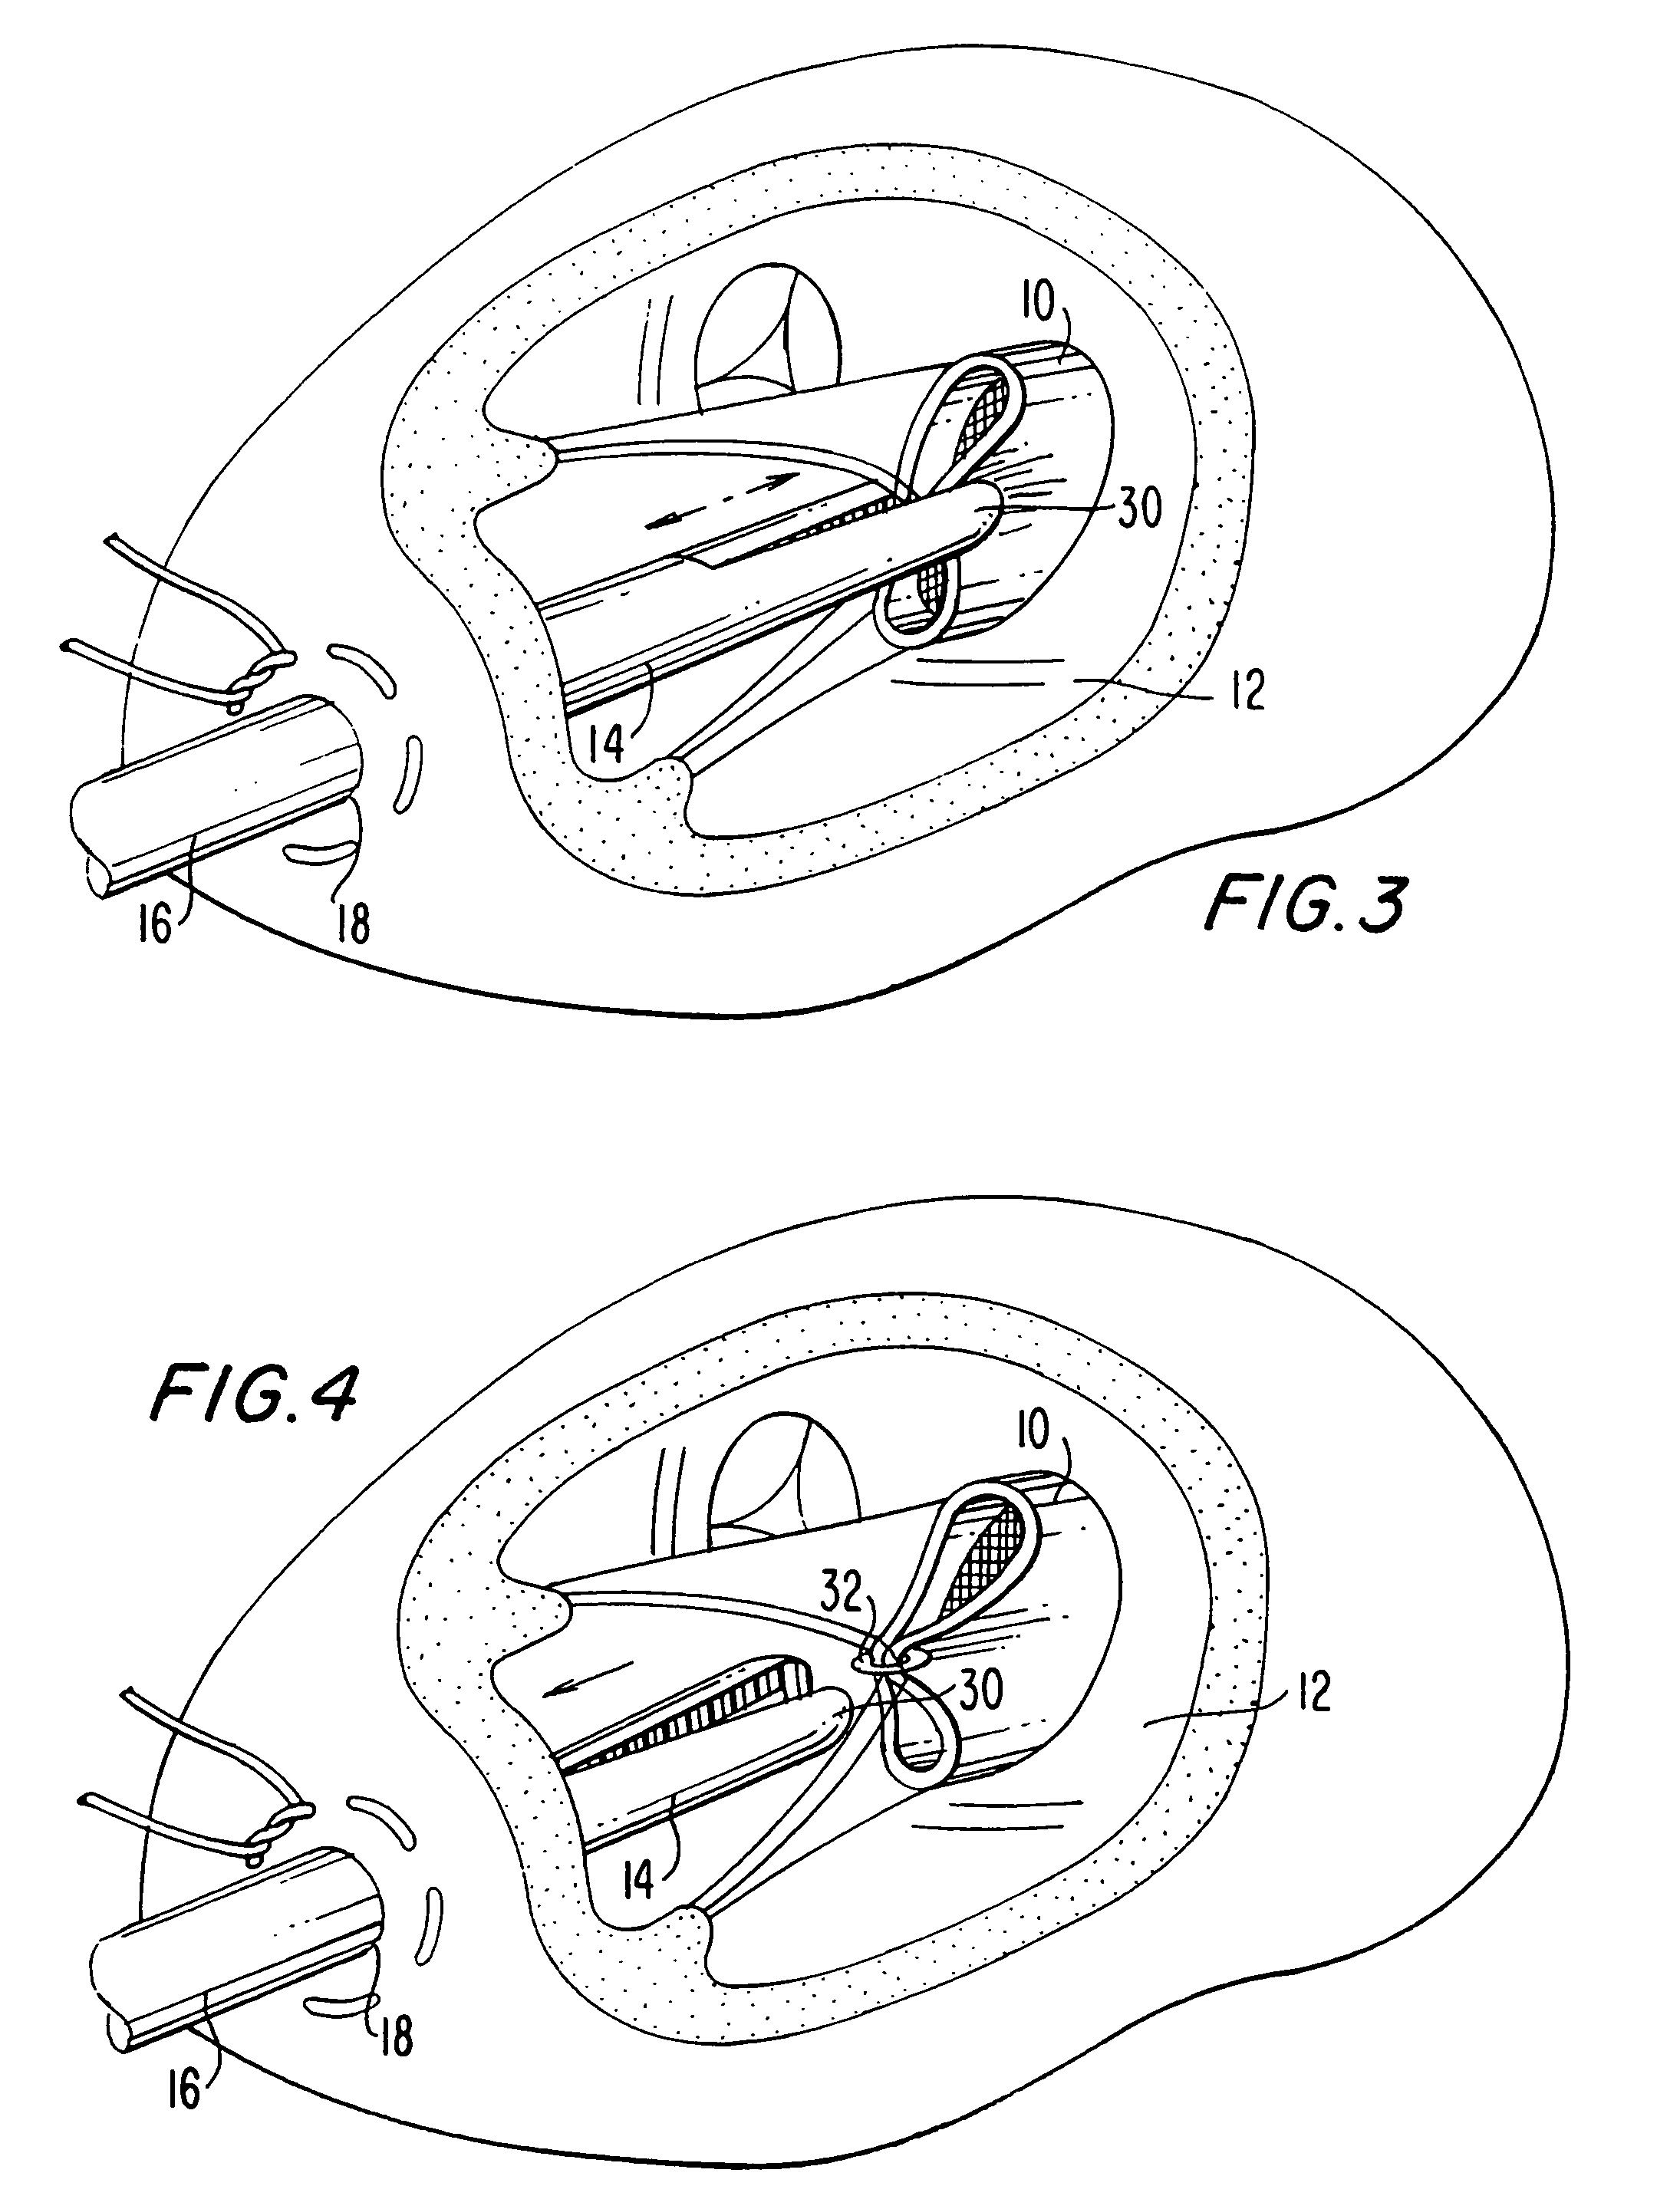 Method and apparatus for circulatory valve repair